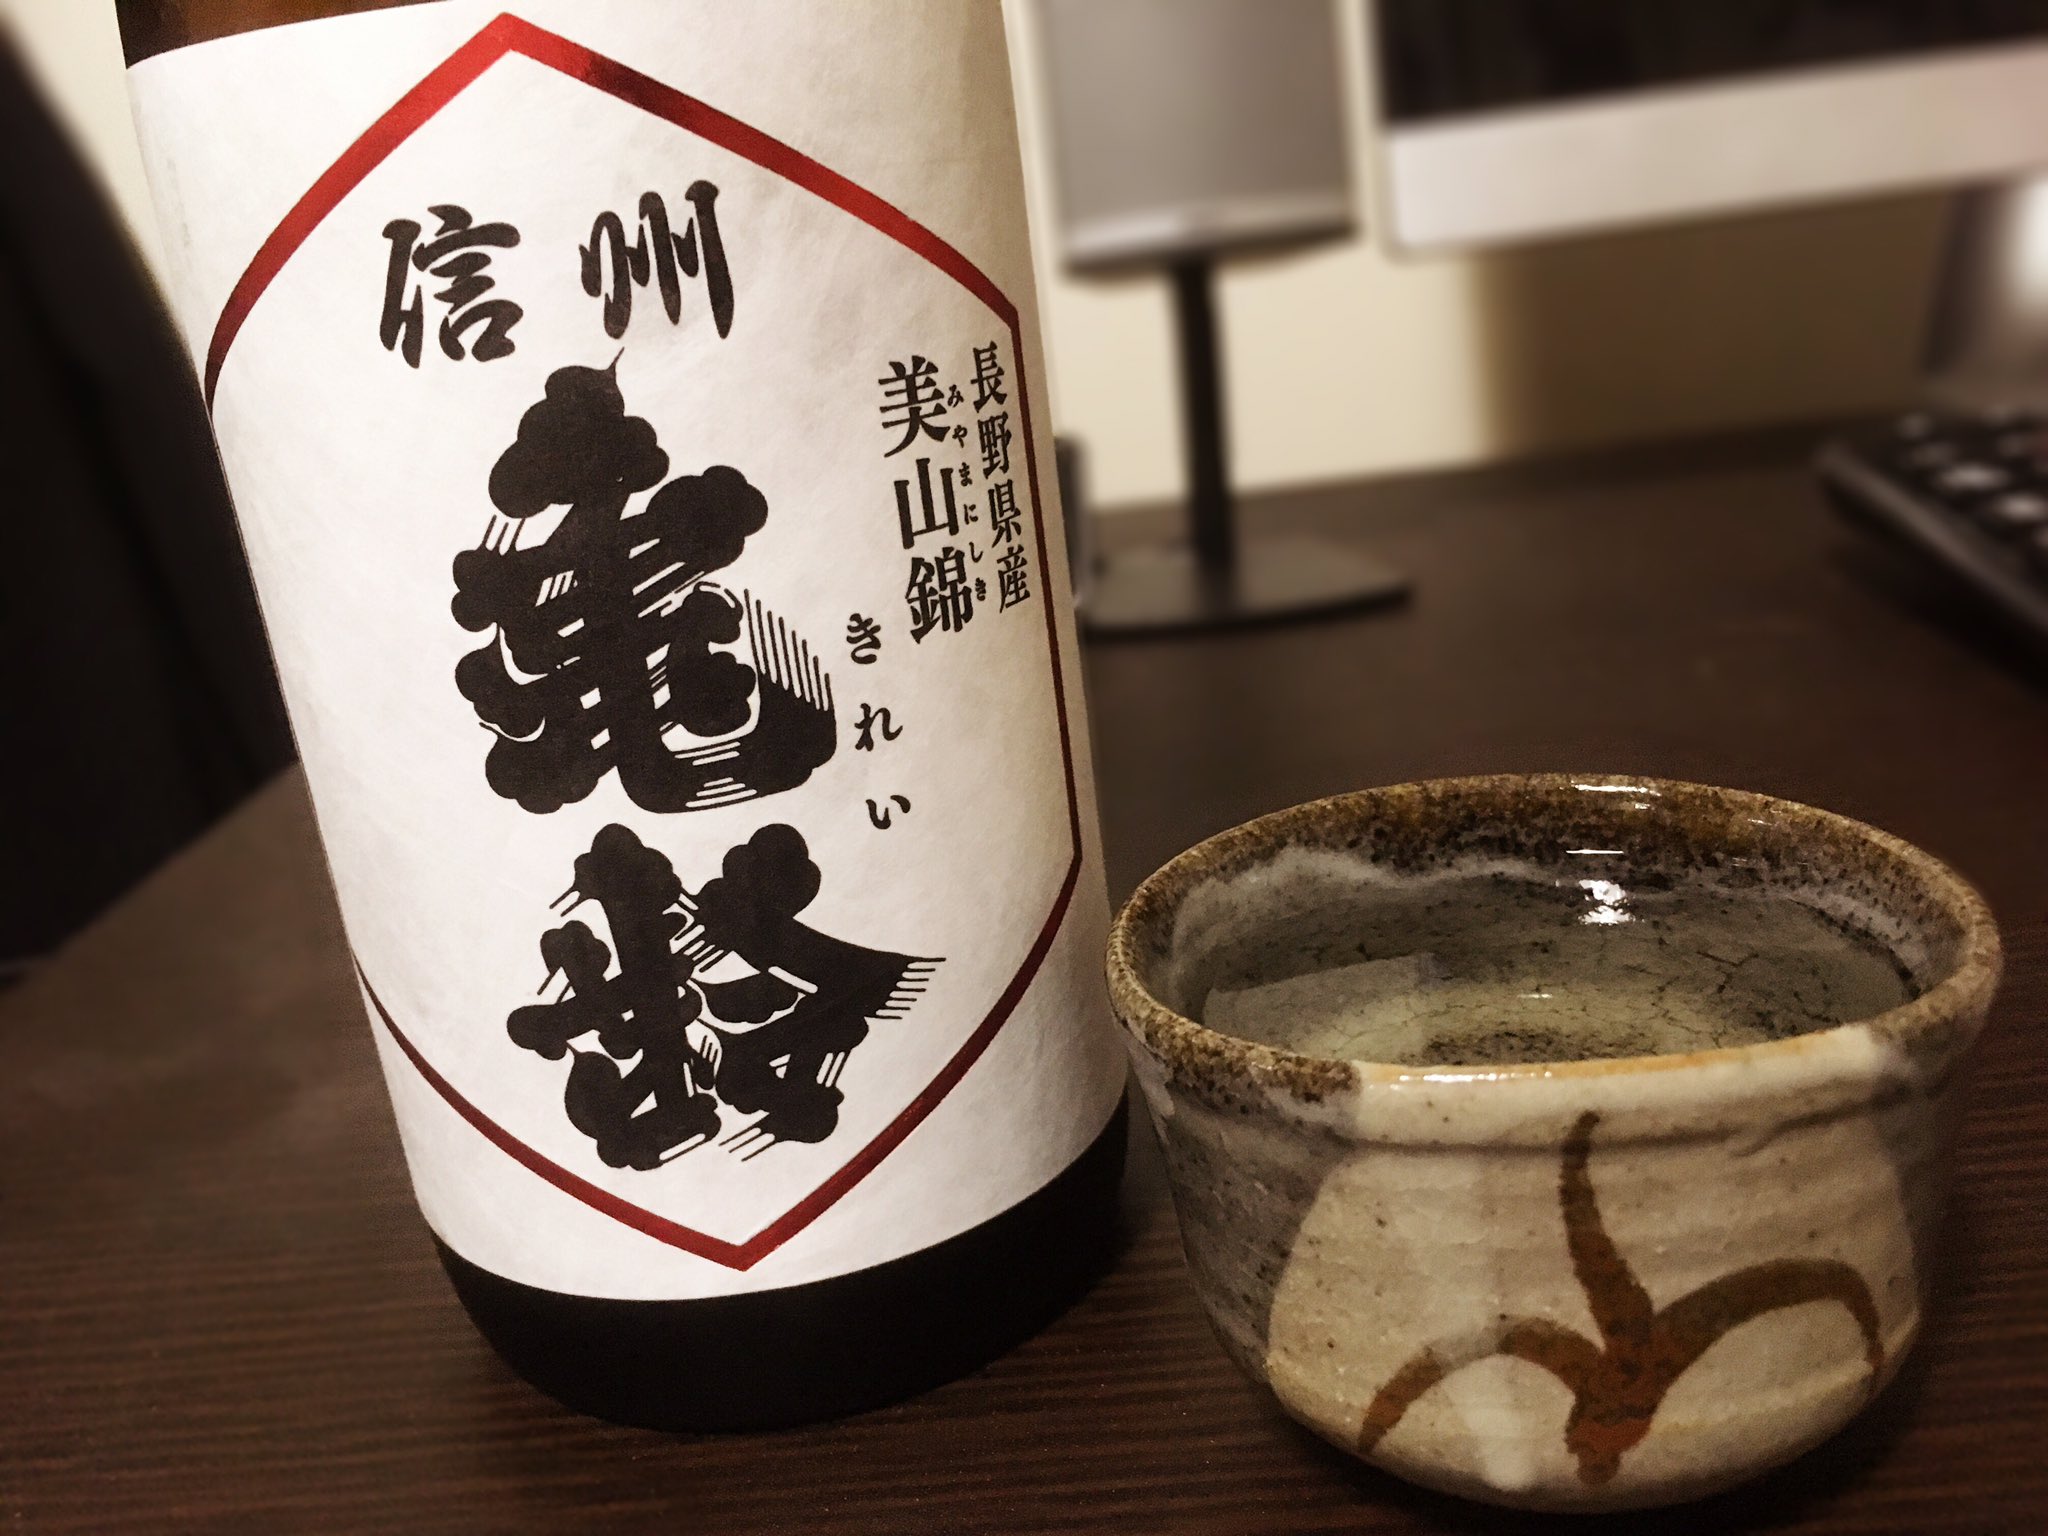 思兼 日本酒嫌いだって人は大抵ワンカップの酒だとか飲み放題のクソまずい日本酒を体験してる人が多いので 一度1500円以上の純米吟醸生酒をひとくち飲んで欲しい 世界が変わる T Co K4xxpyfqbe Twitter